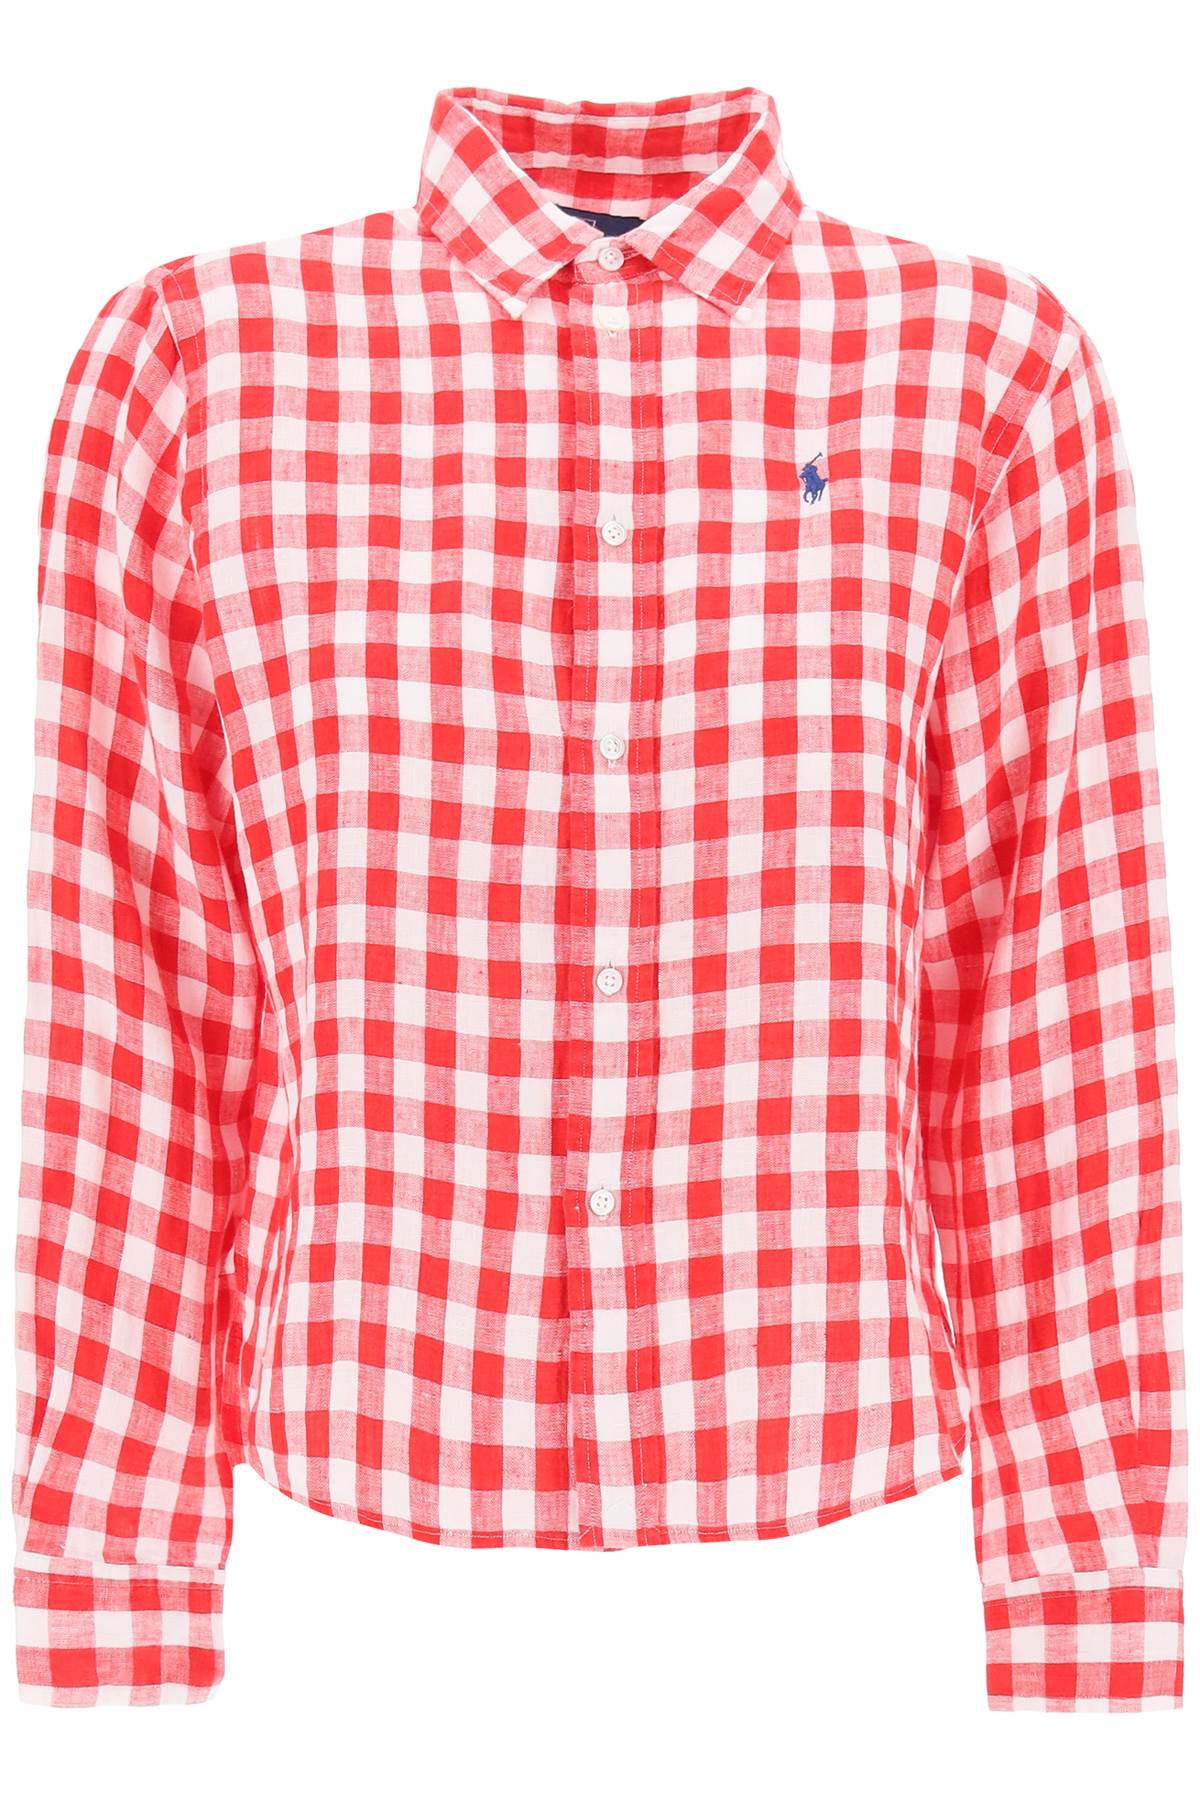 Polo Ralph Lauren Wide And Short Gingham Linen Shirt.   Red